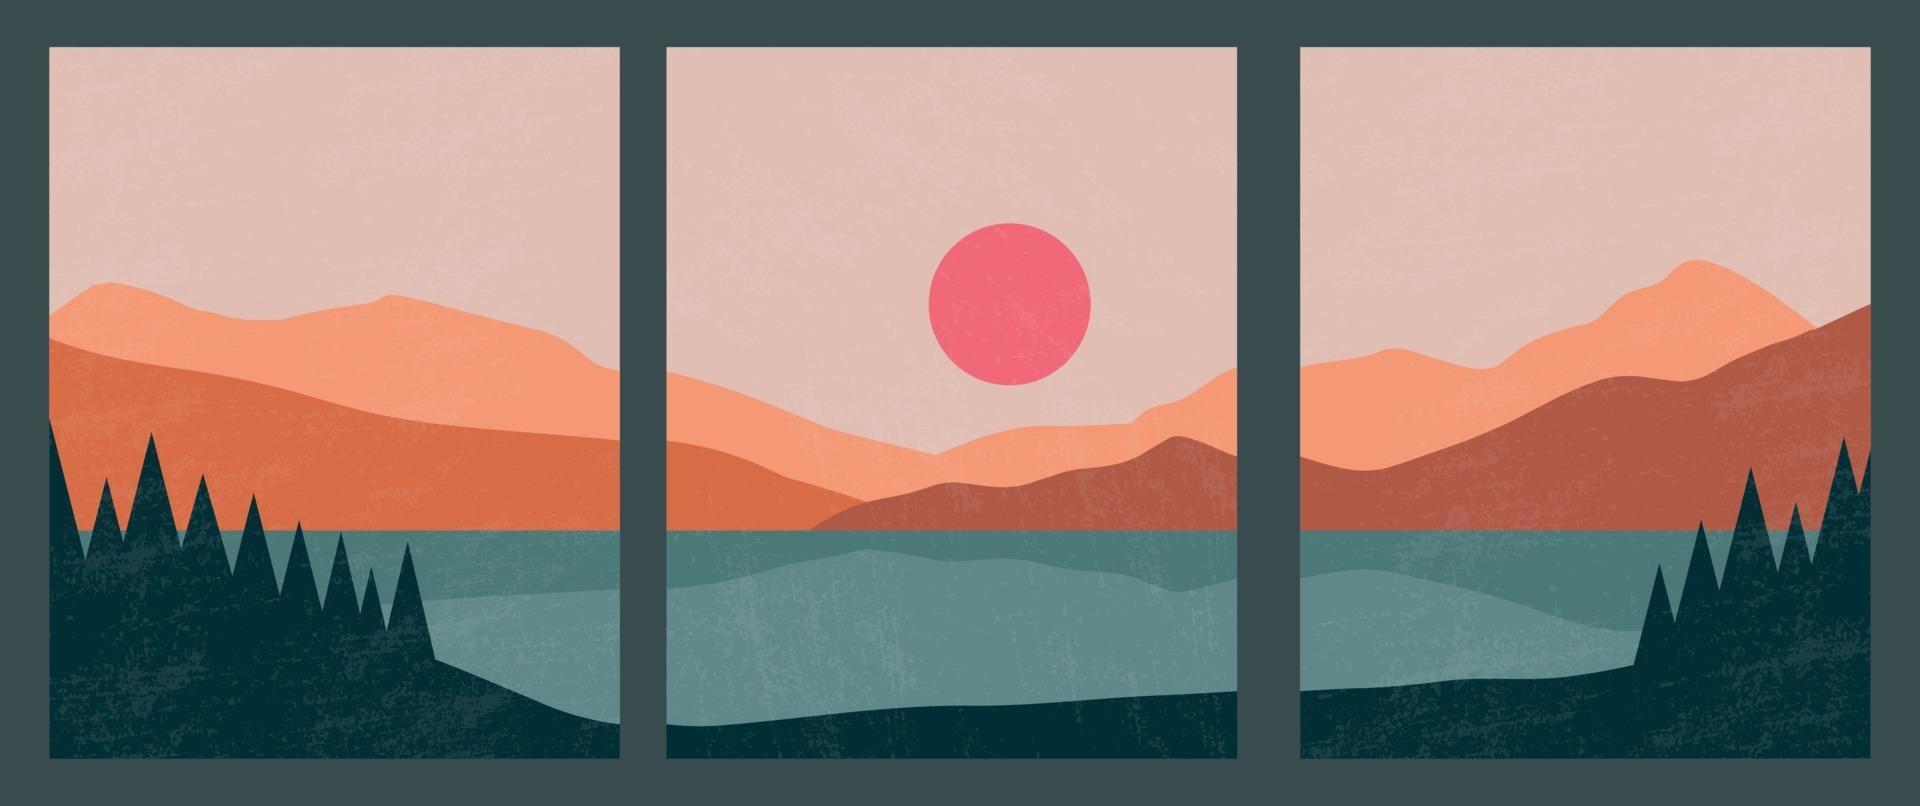 poster di paesaggi contemporanei astratti. sfondo boho moderno con lago, fiume, sole, luna, montagne, decorazioni murali minimaliste. stampa d'arte vettoriale